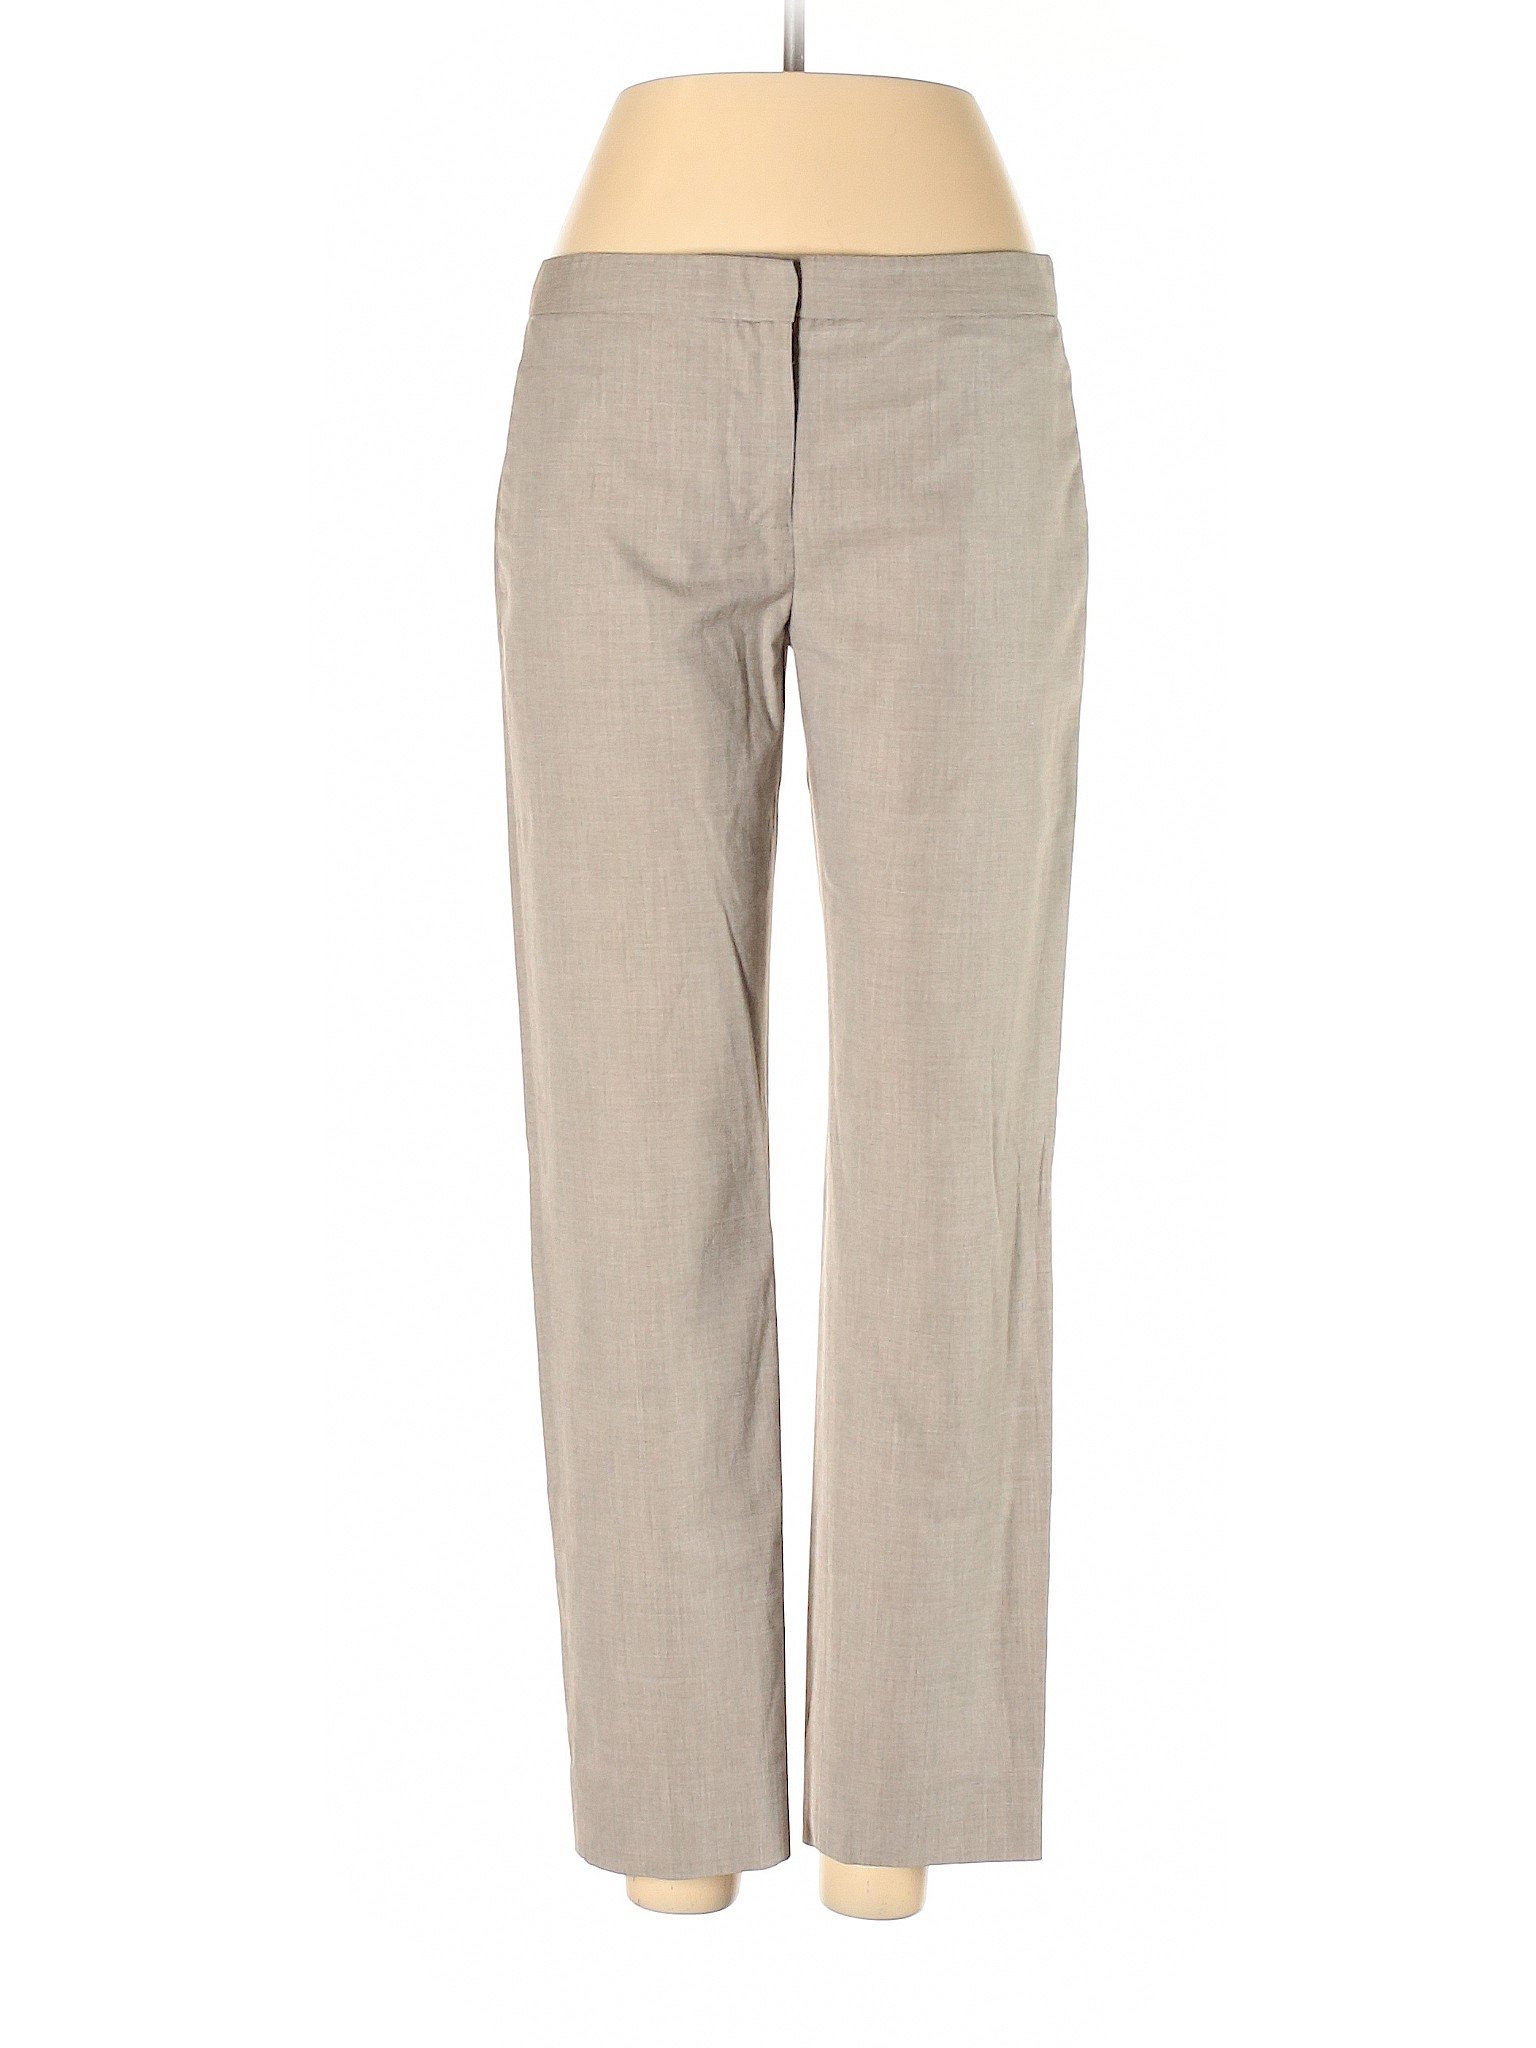 Club Monaco Women Brown Dress Pants 4 | eBay